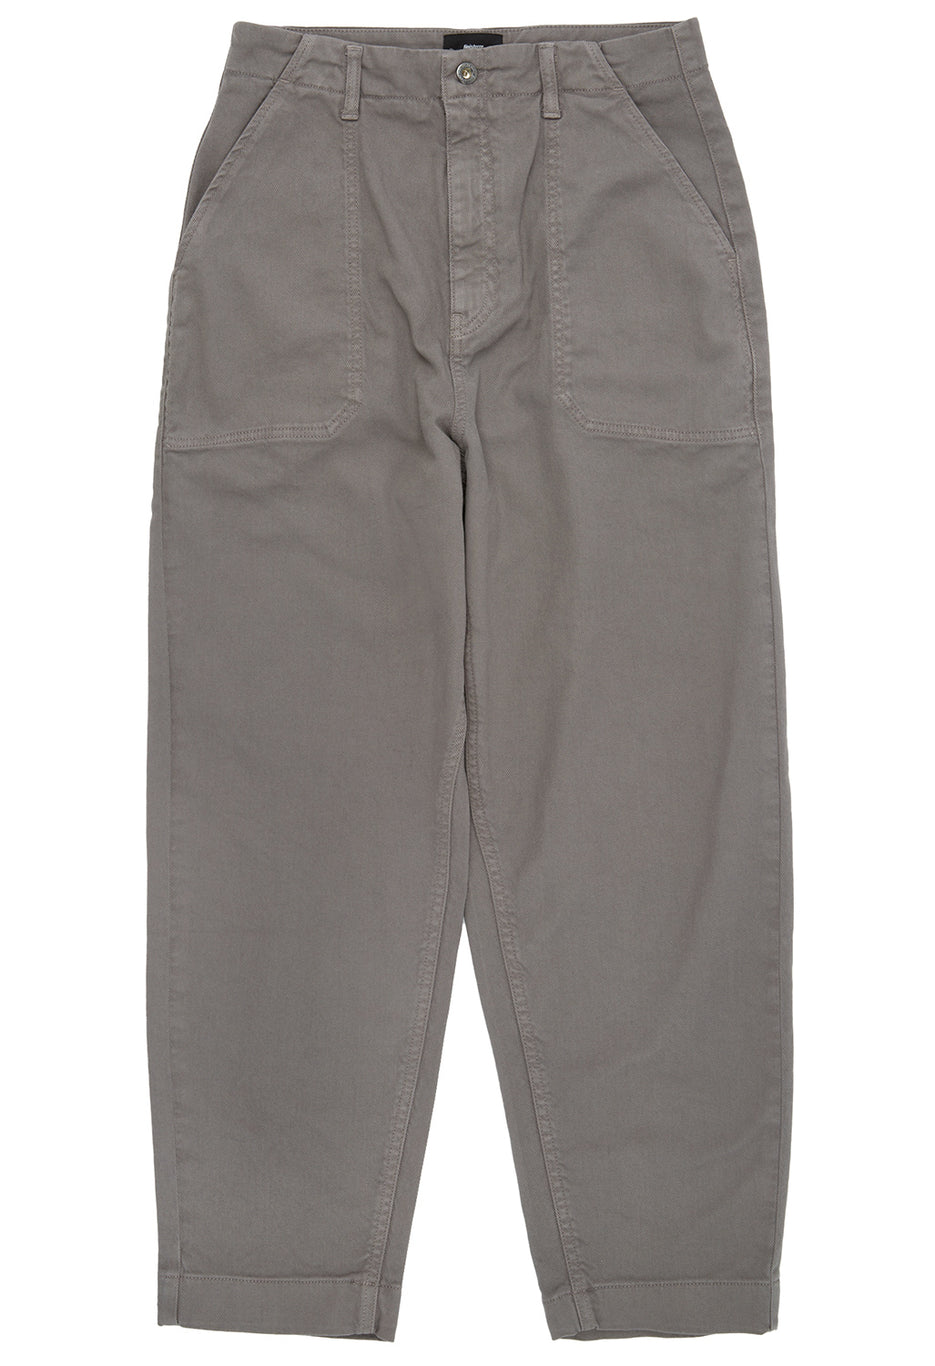 Finisterre Women's Yarrel Trousers - Grey